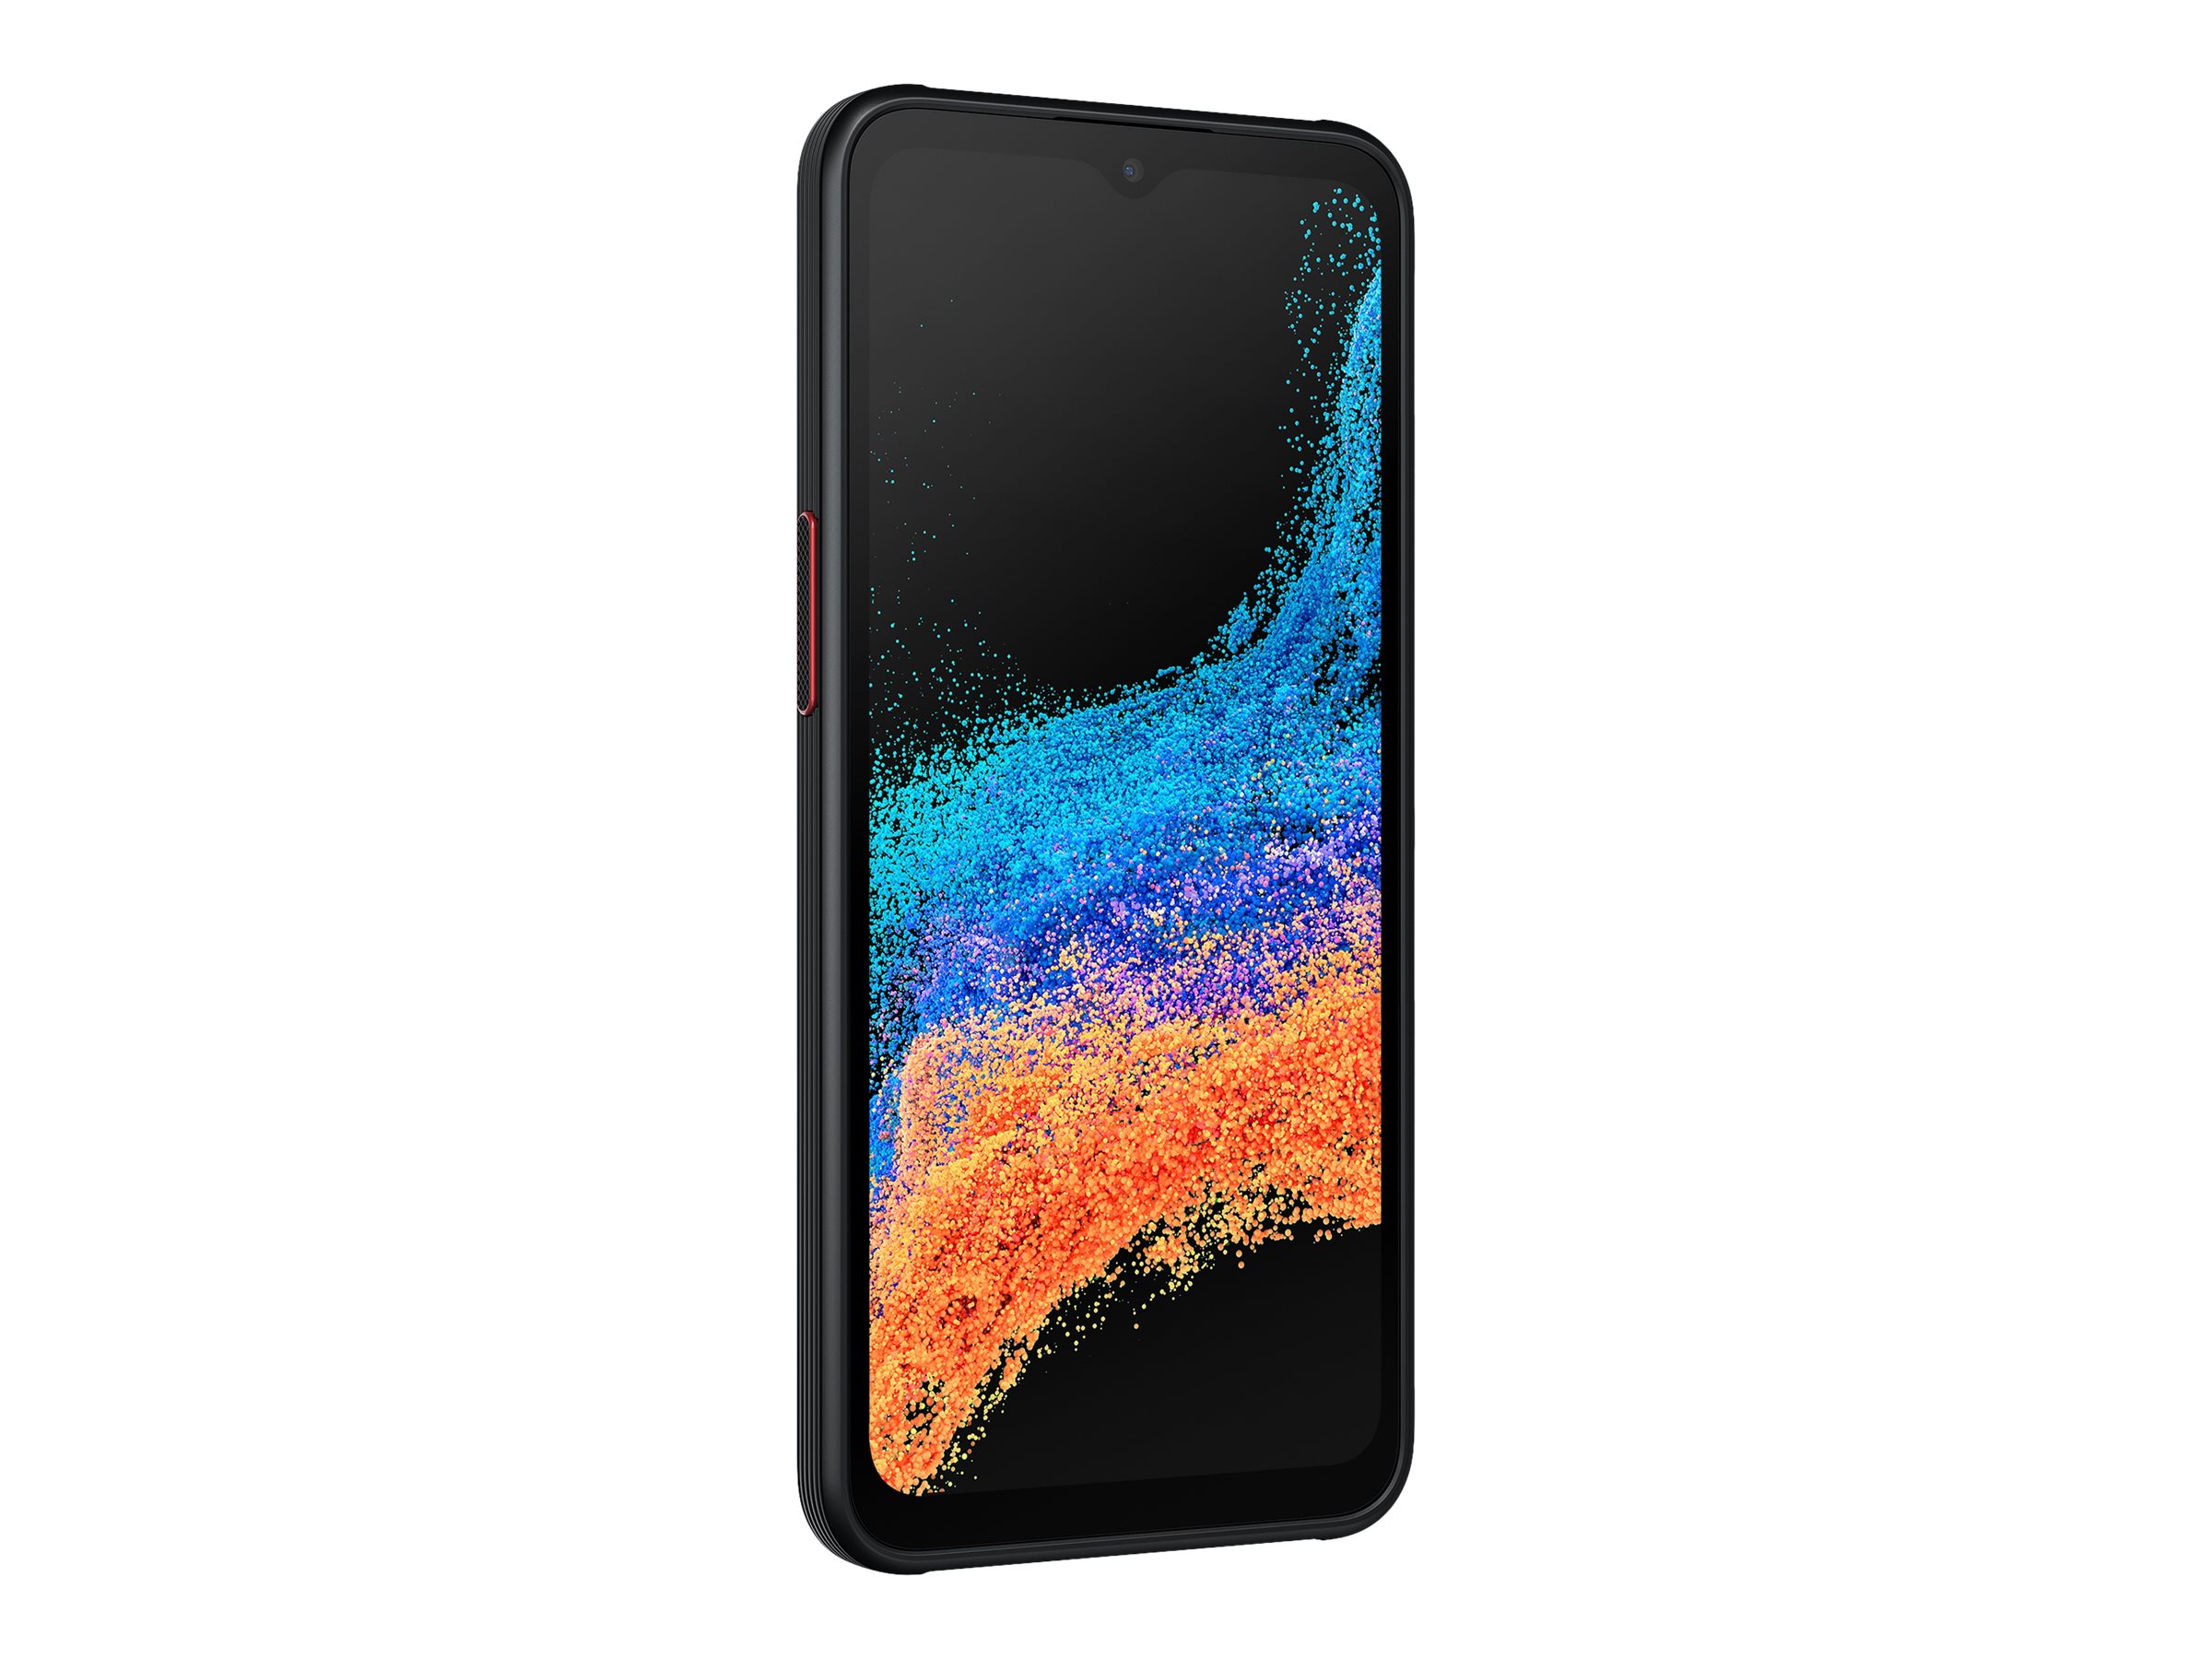 Samsung Galaxy Xcover 6 Pro - Enterprise Edition - 5G smartphone - double SIM - RAM 6 Go / Mémoire interne 128 Go - microSD slot - Écran LCD - 6.6" - 2408 x 1080 pixels (120 Hz) - 2x caméras arrière 50 MP, 8 MP - front camera 13 MP - noir - SM-G736BZKDEEB - Smartphones 5G